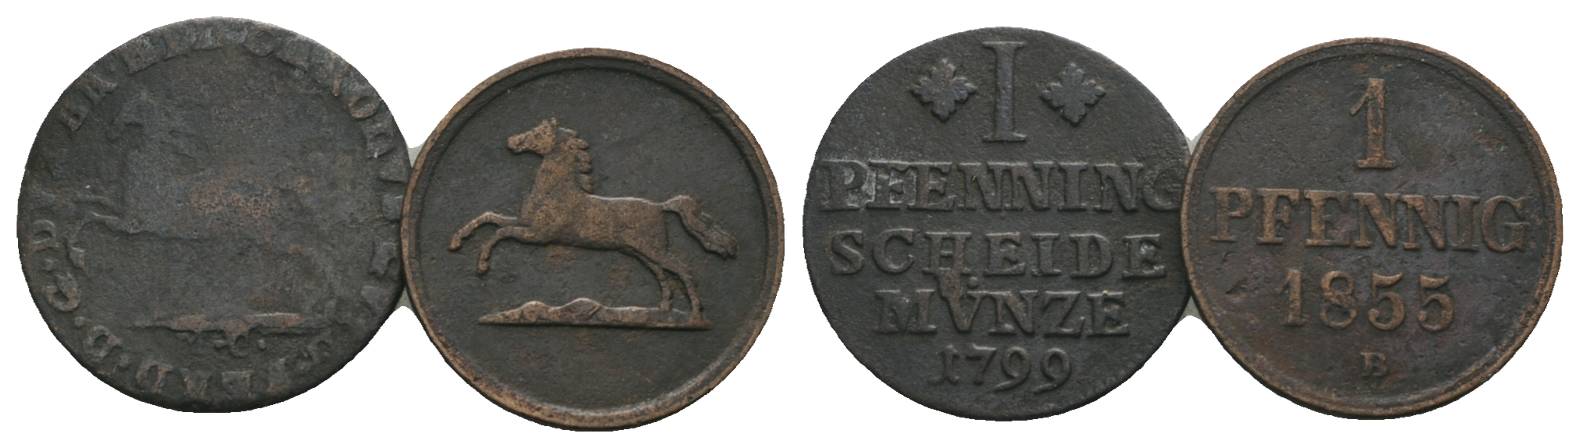  Altdeutschland, 2 Kleinmünzen (1799/1855)   